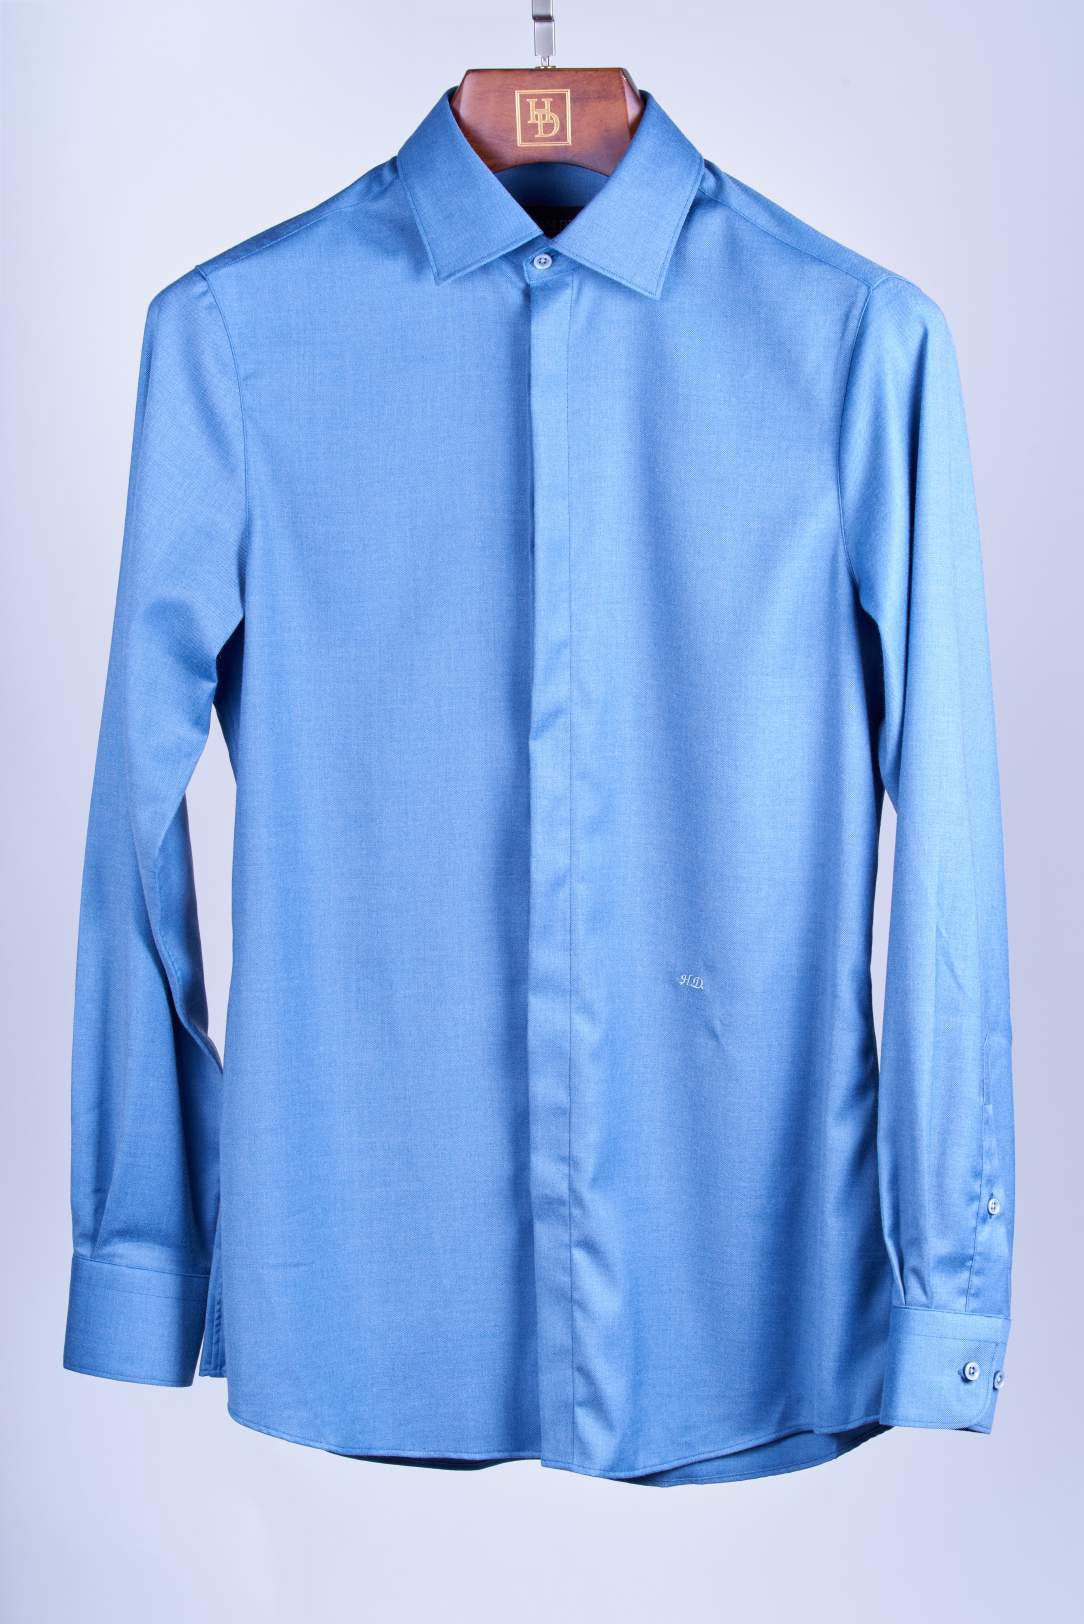 Slate Blue Shirt